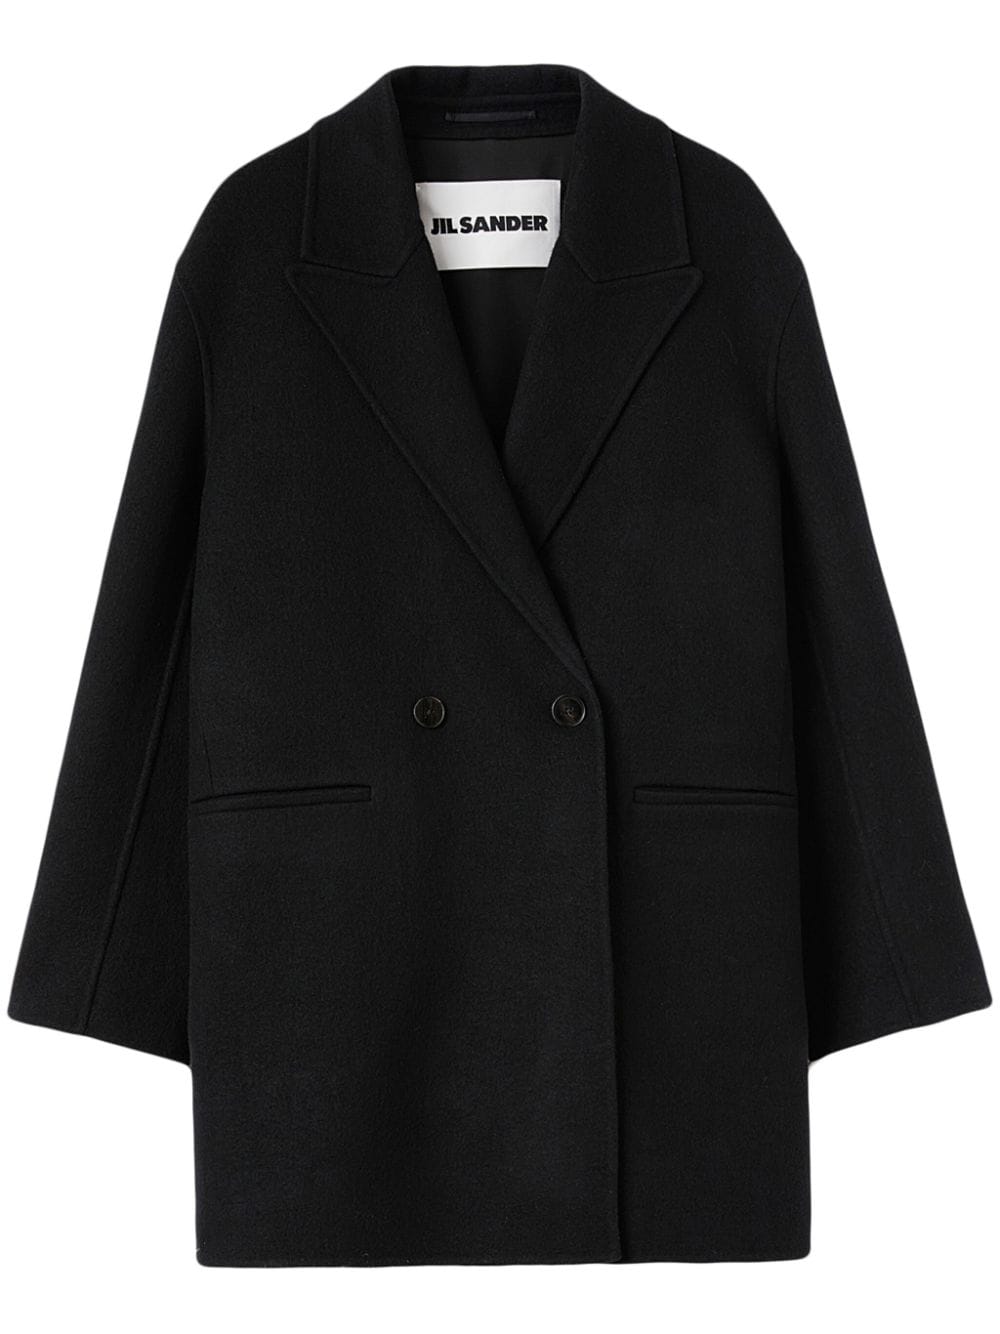 Jil Sander double-breasted virgin wool coat - Black